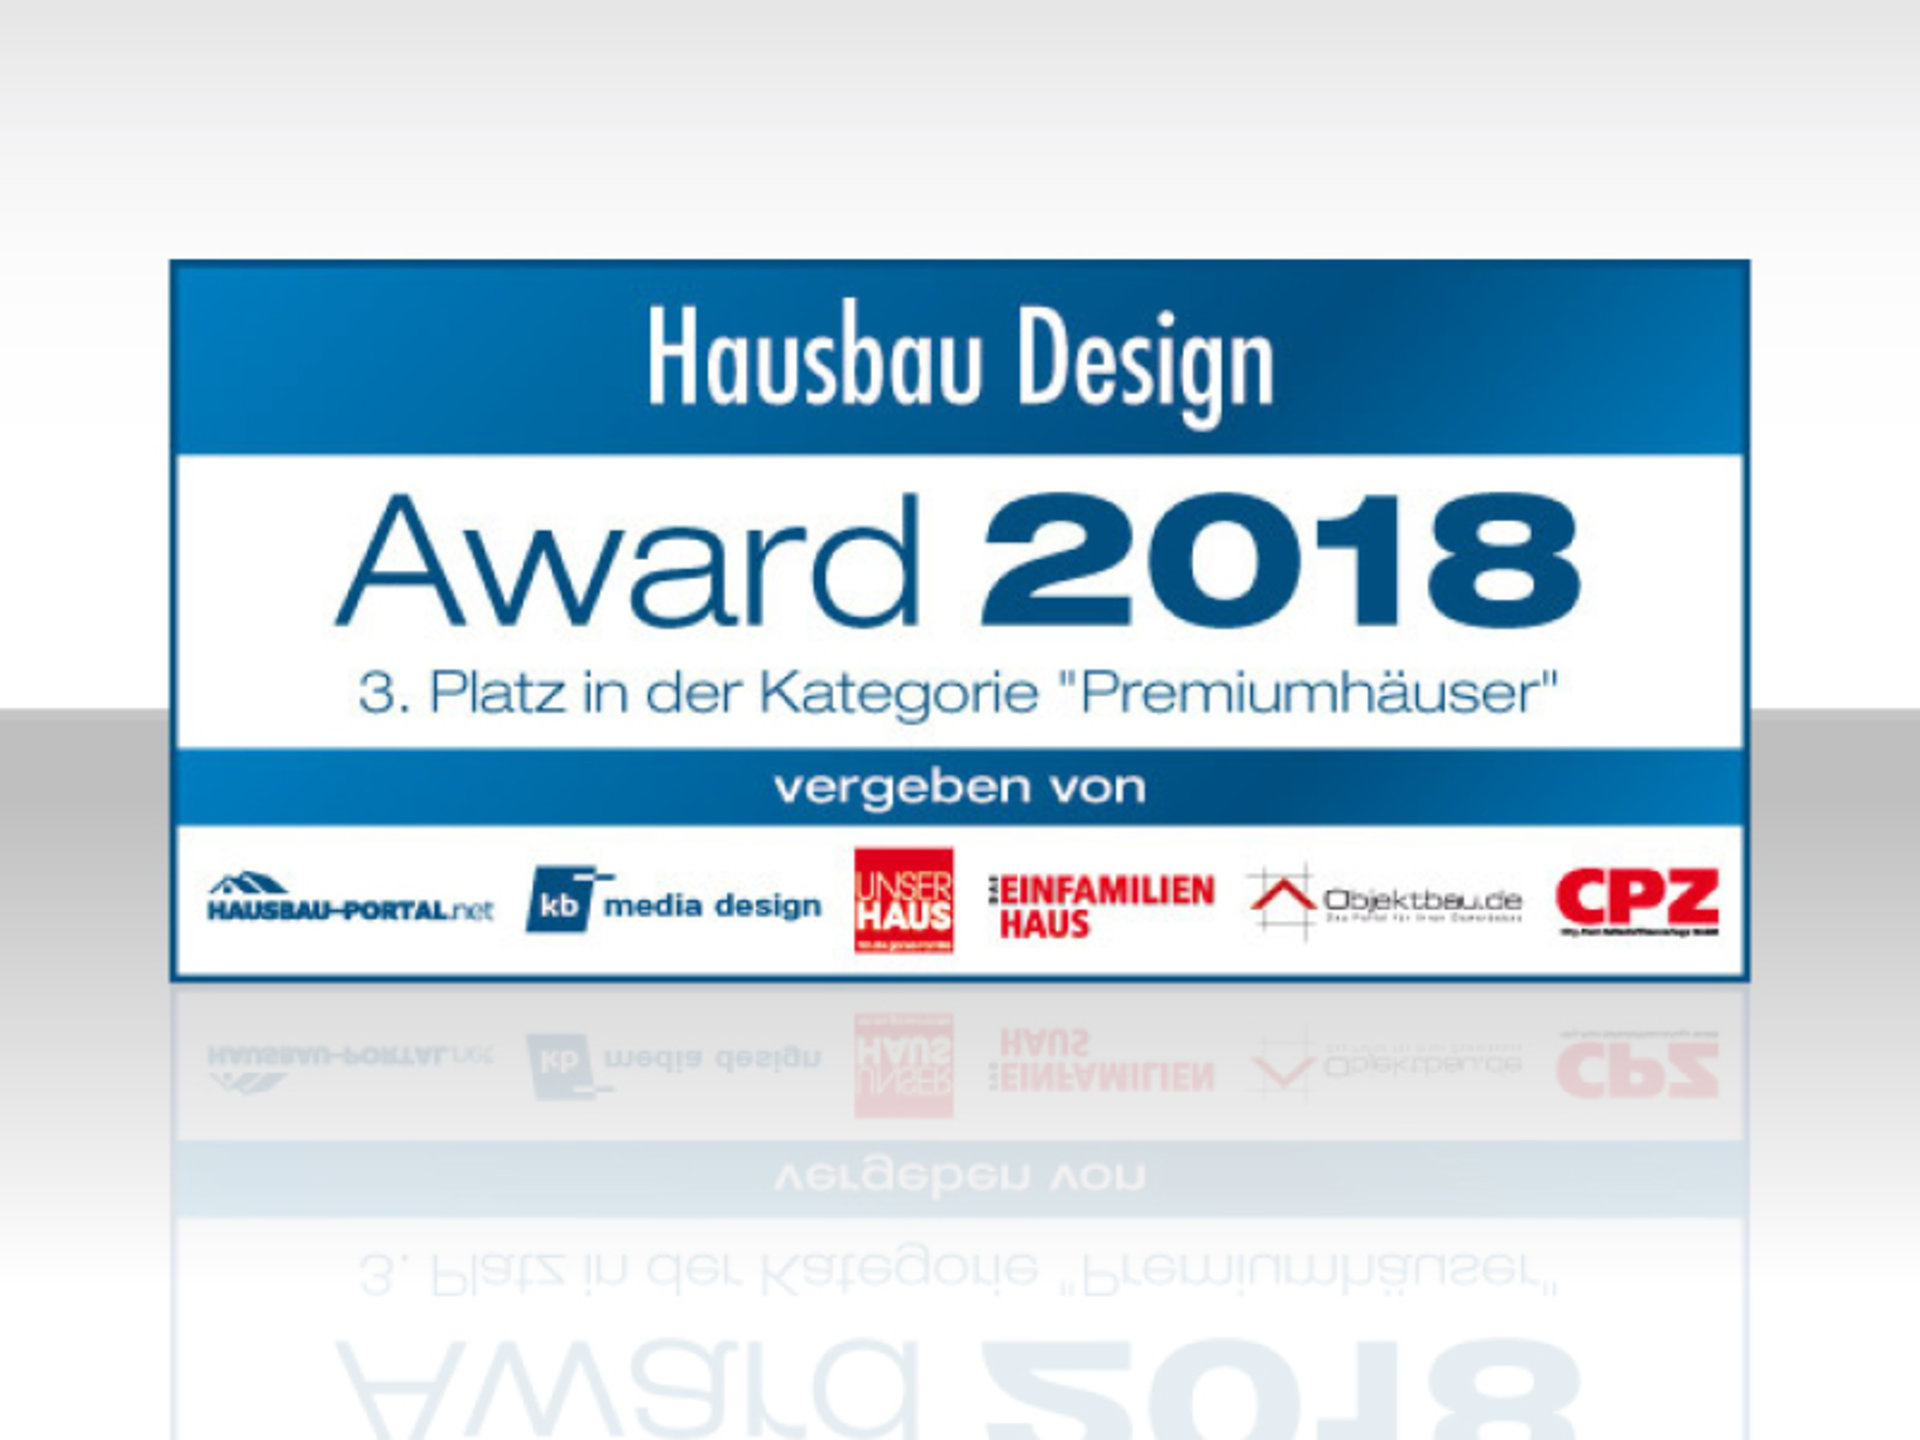 Einfamilienhaus Ungermann holt den 3. Platz beim Hausbau Design Award 2018 in der Kategorie "Premiumhäuser" (Foto: © BAUMEISTER-HAUS)